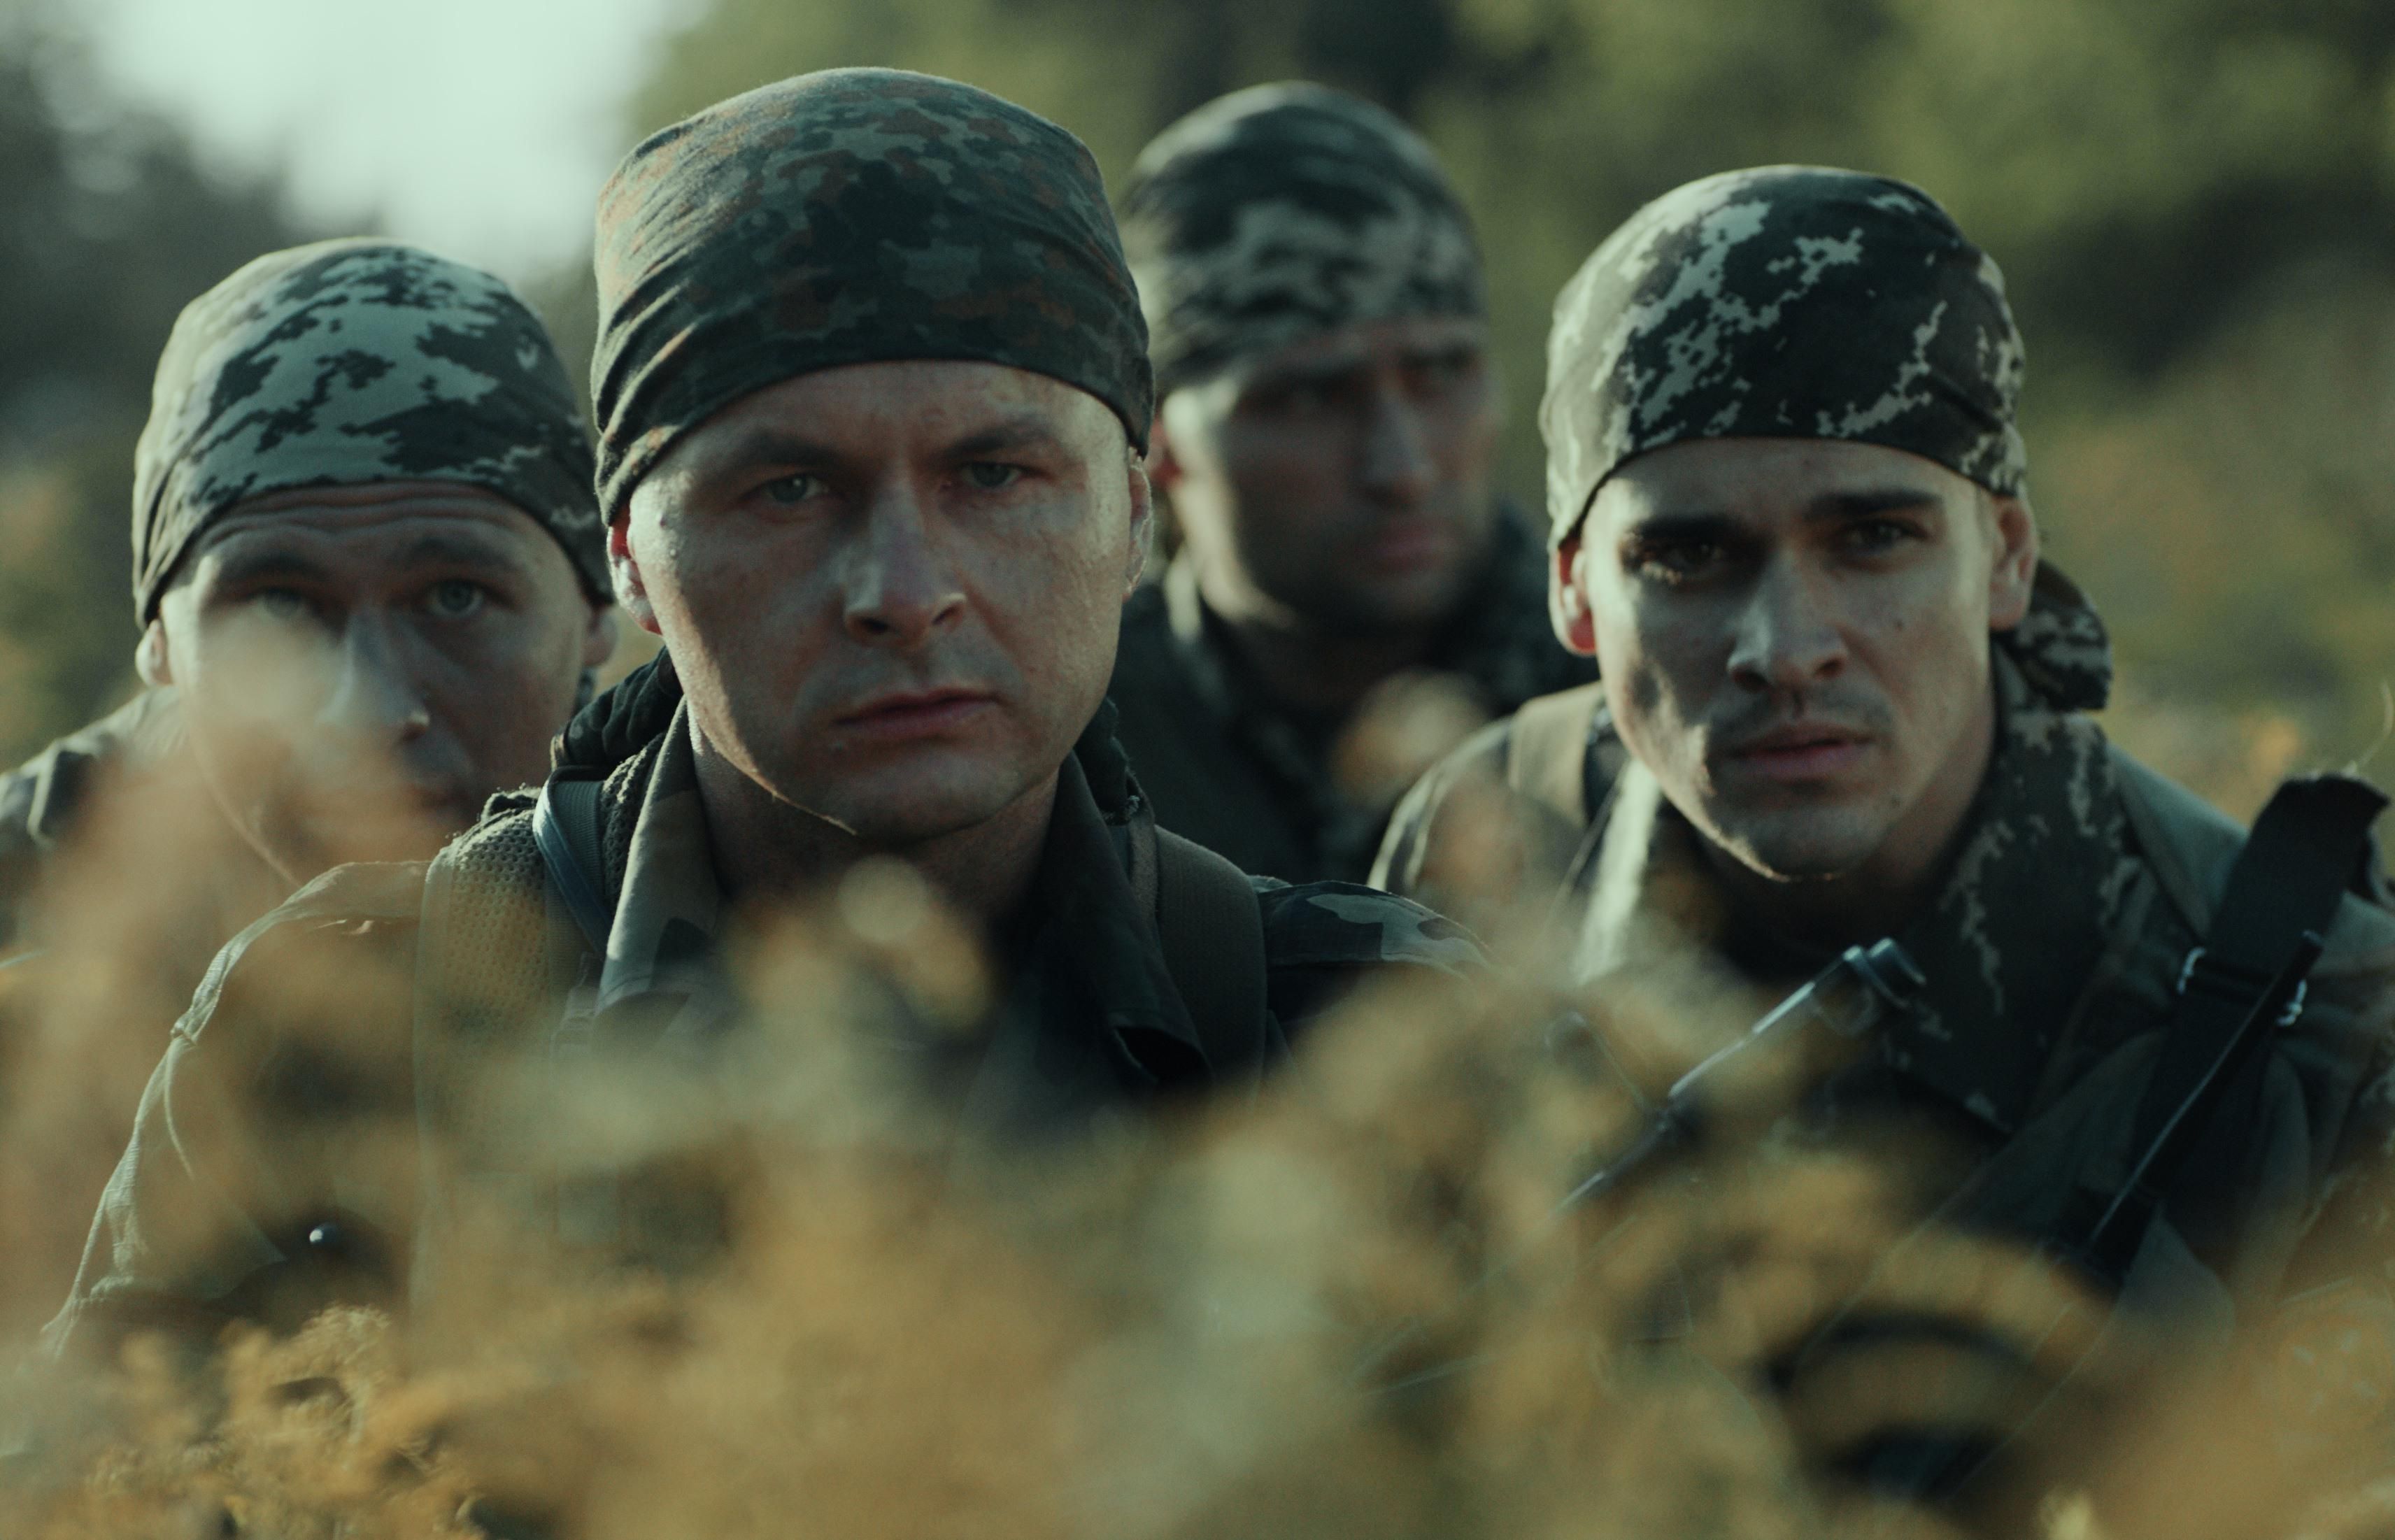 Фильм Ахтема Сеитабаева покажут на одном из крупнейших кинорынков Европы – в Каннах - Кино